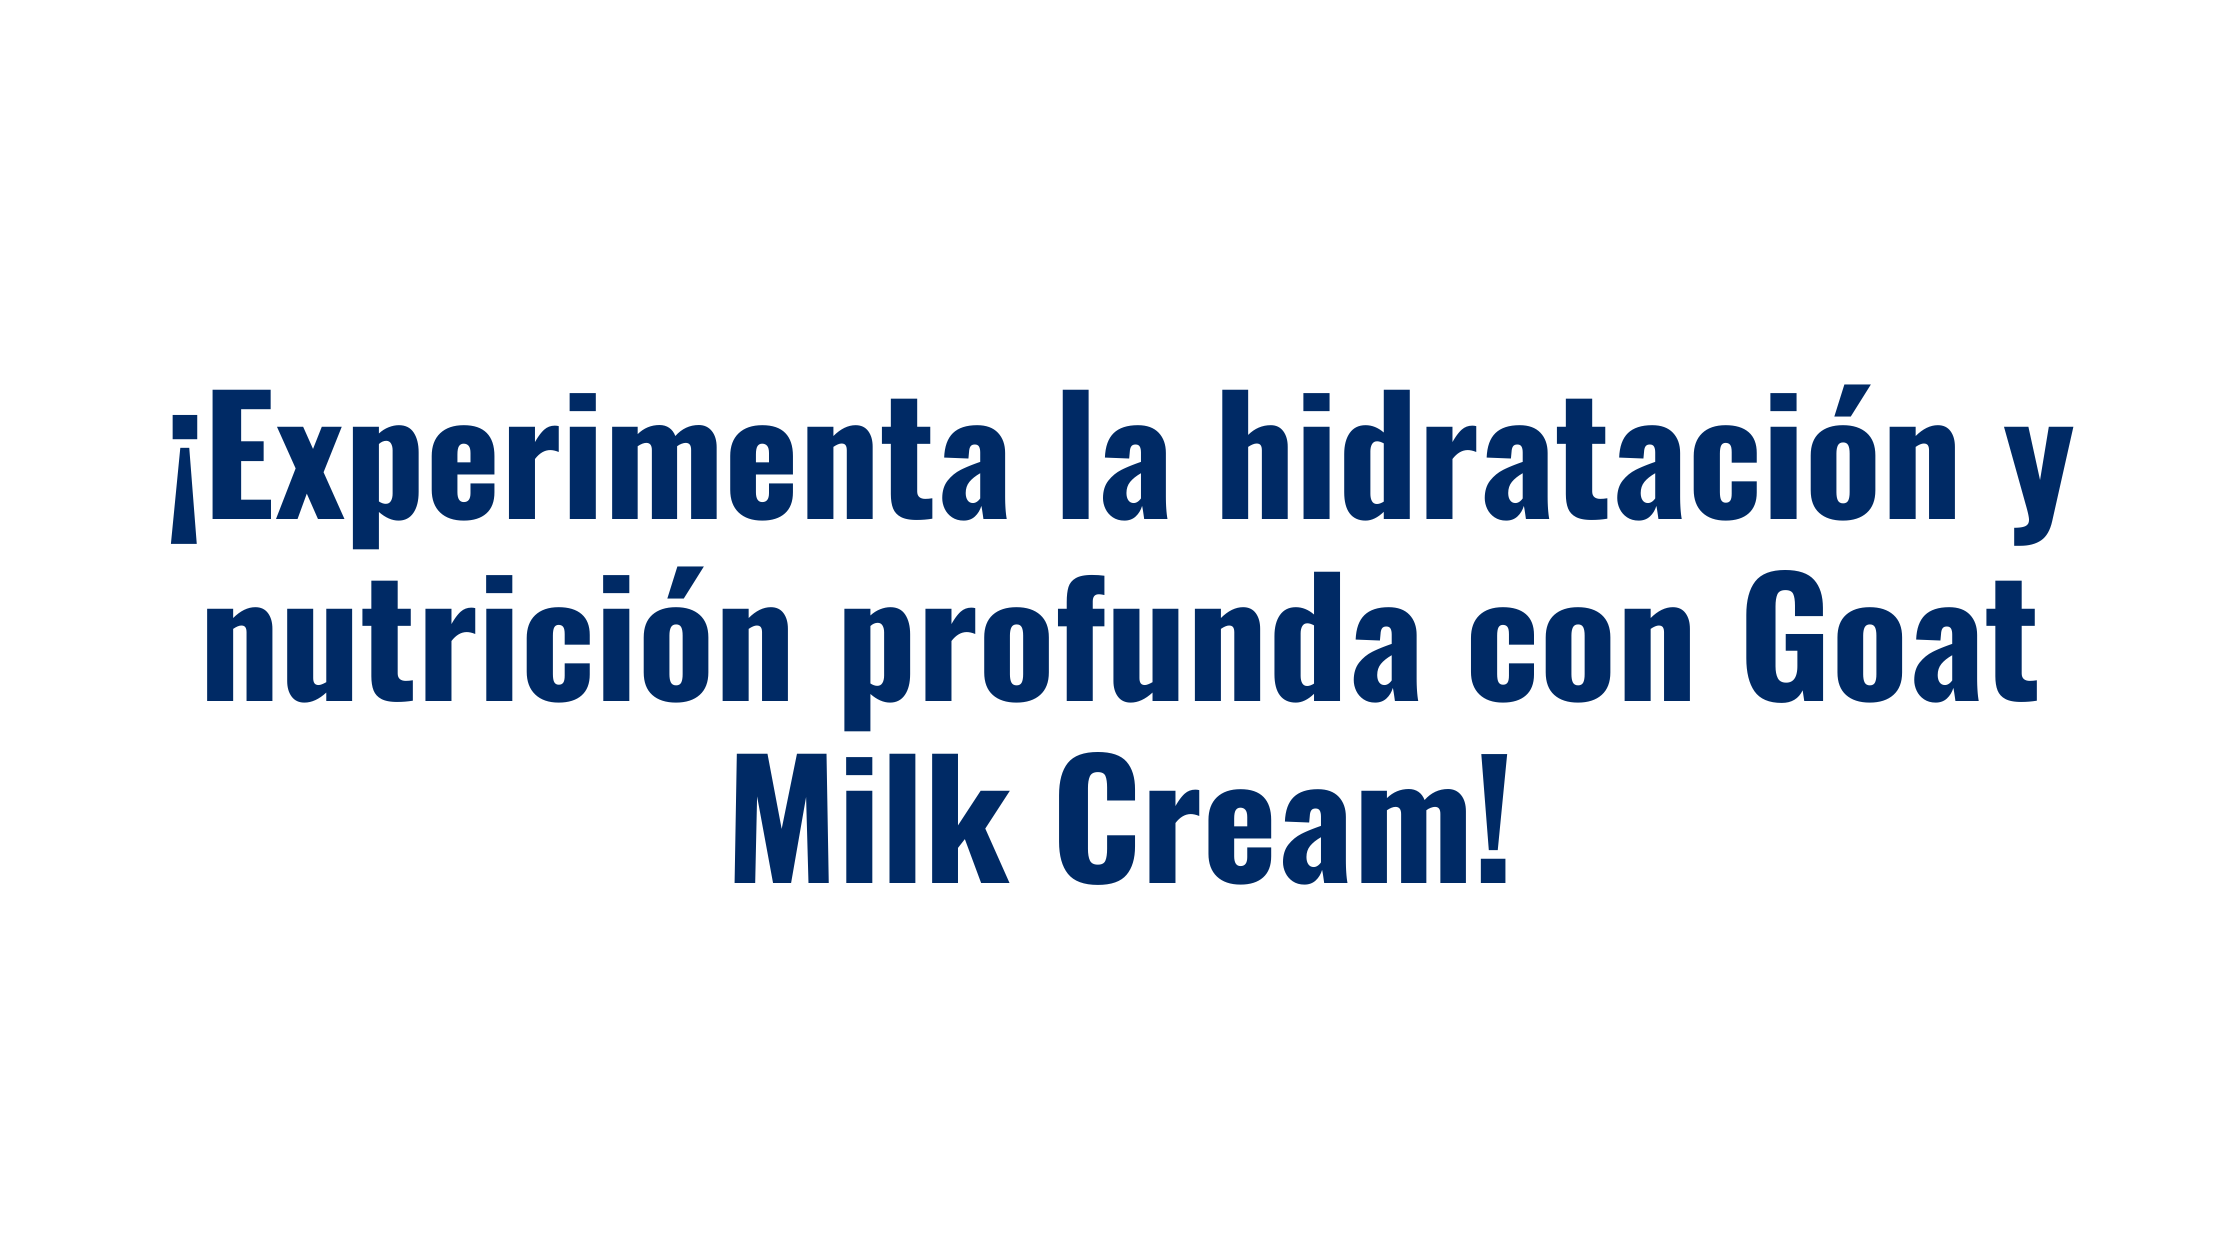 ¡Experimenta la hidratación y nutrición profunda con Goat Milk Cream!